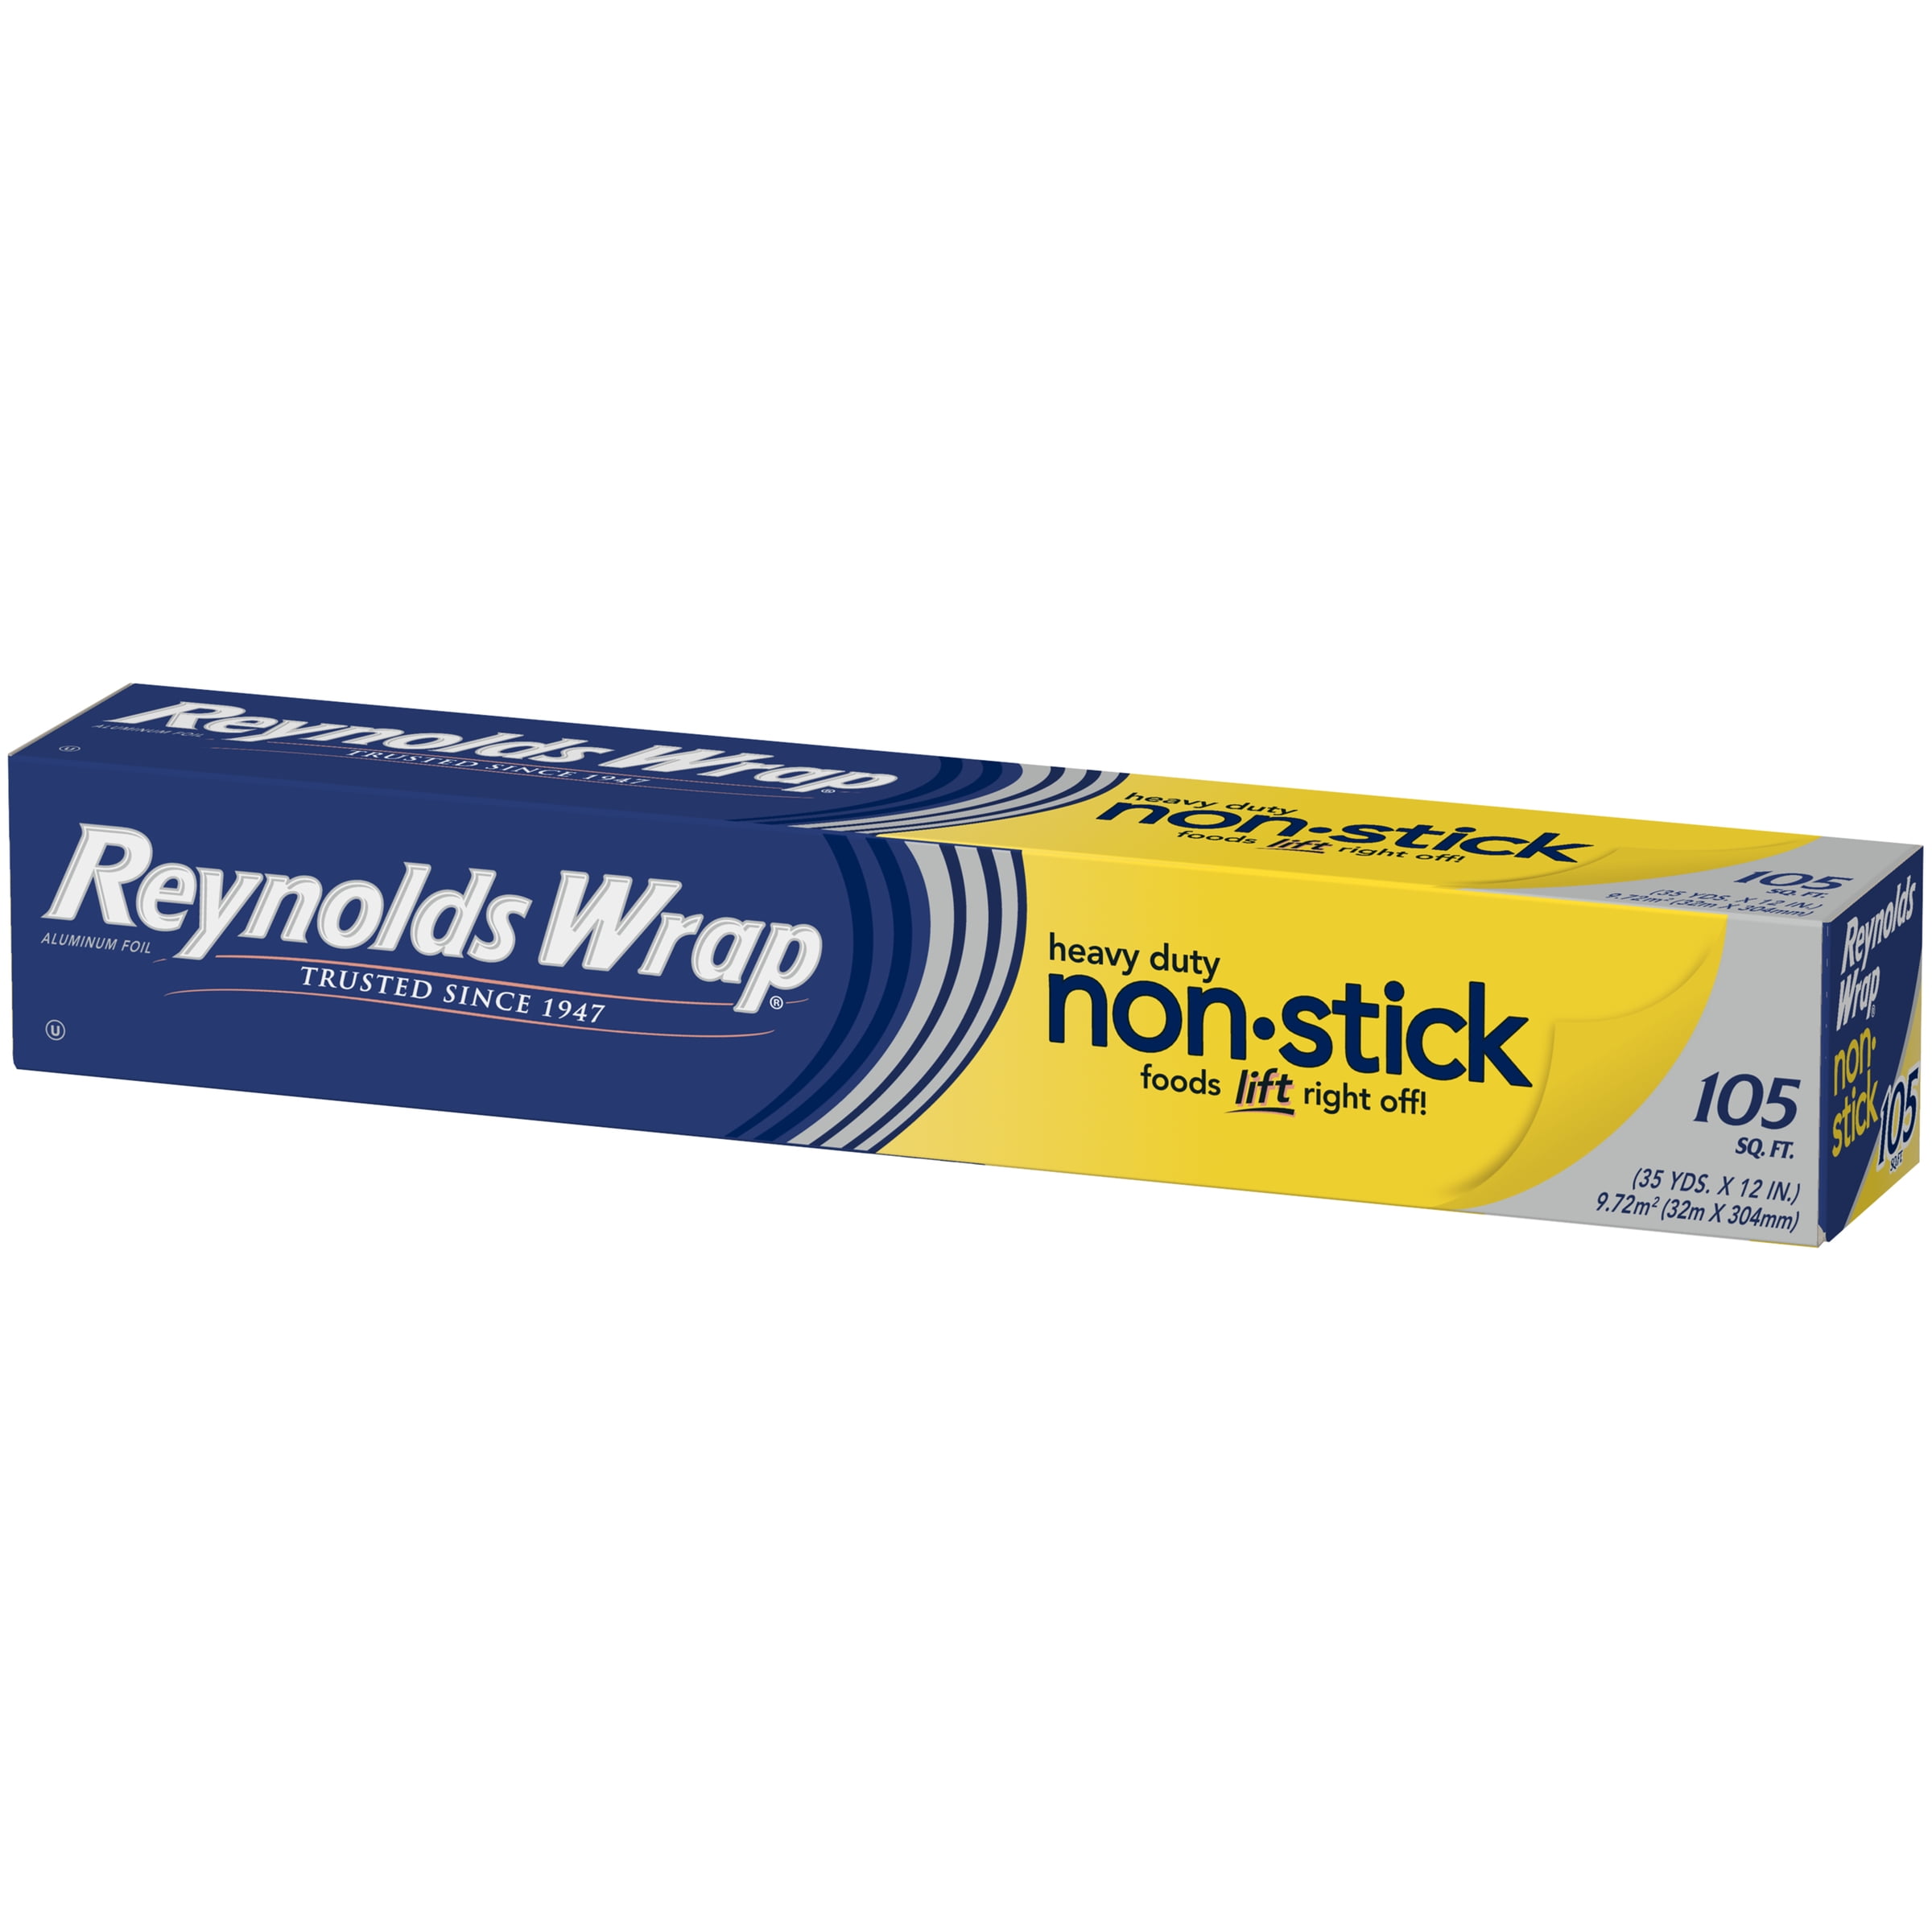 Reynolds Wrap Non-Stick Aluminum Foil, 105 Square Feet 